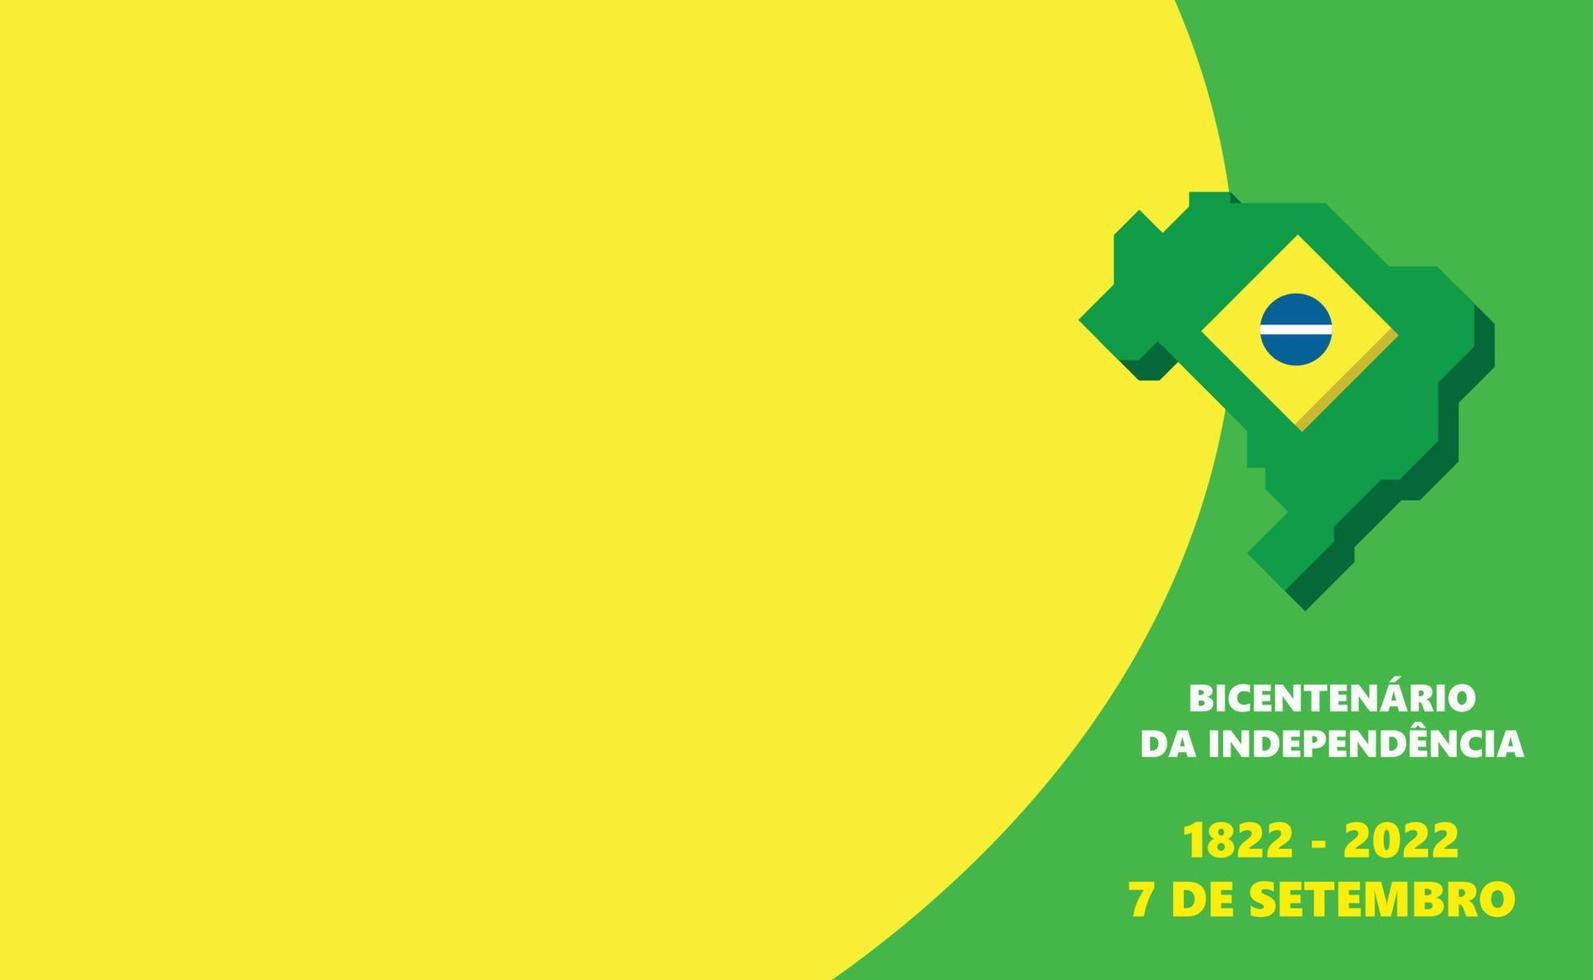 brasiliansk oberoende tvåhundraårsjubileum baner. baner med de flagga och färger av Brasilien. vektor